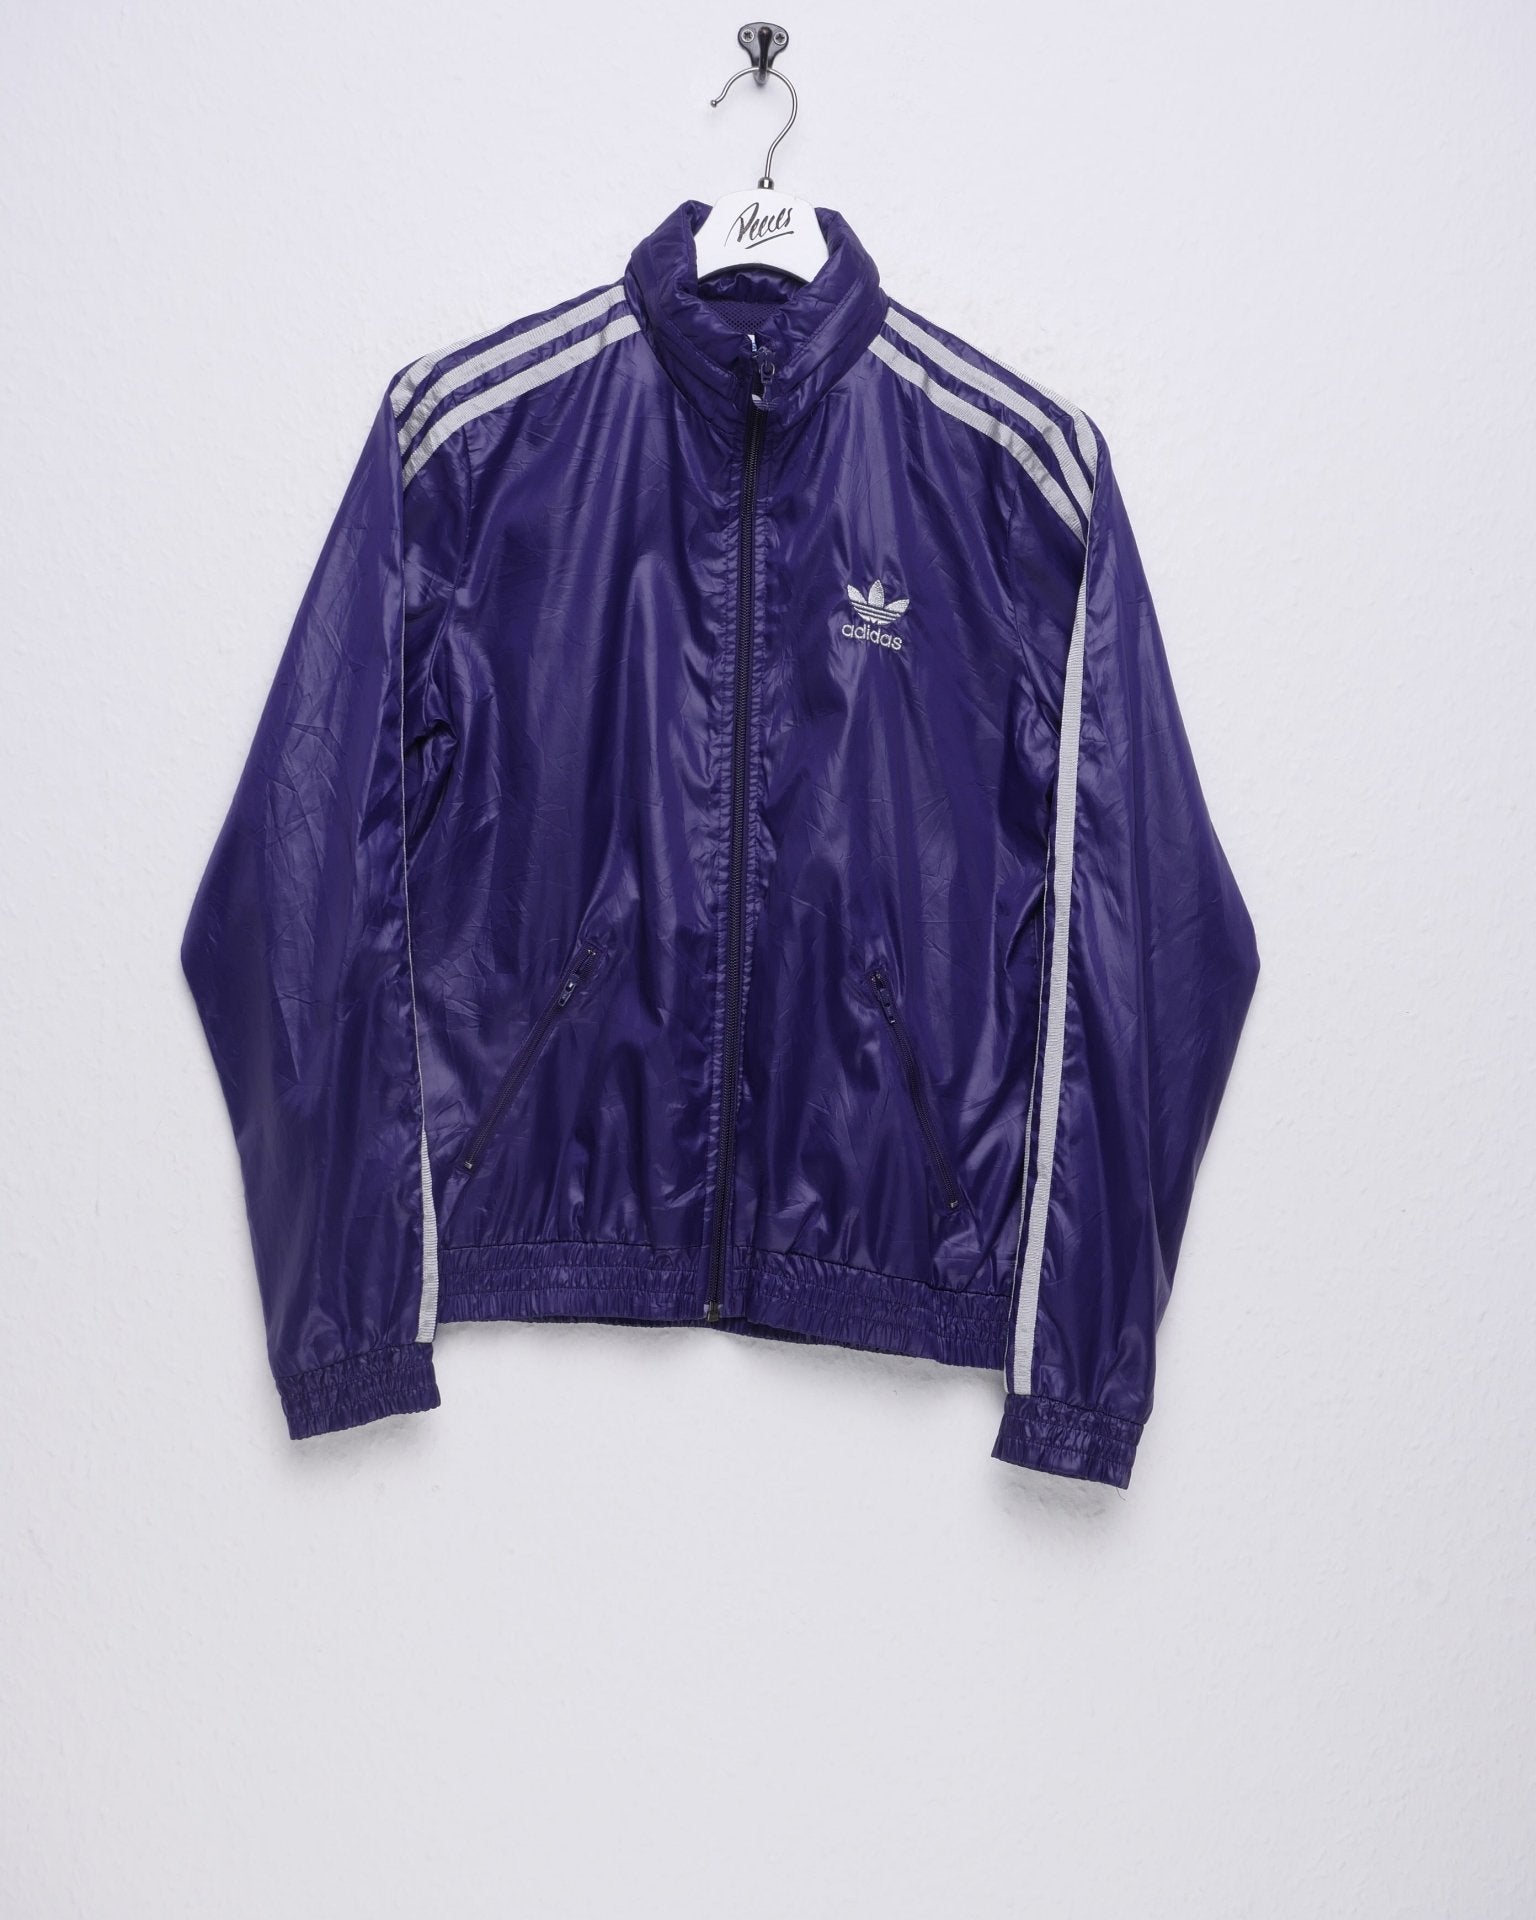 Adidas embroidered Logo purple Track Jacke - Peeces